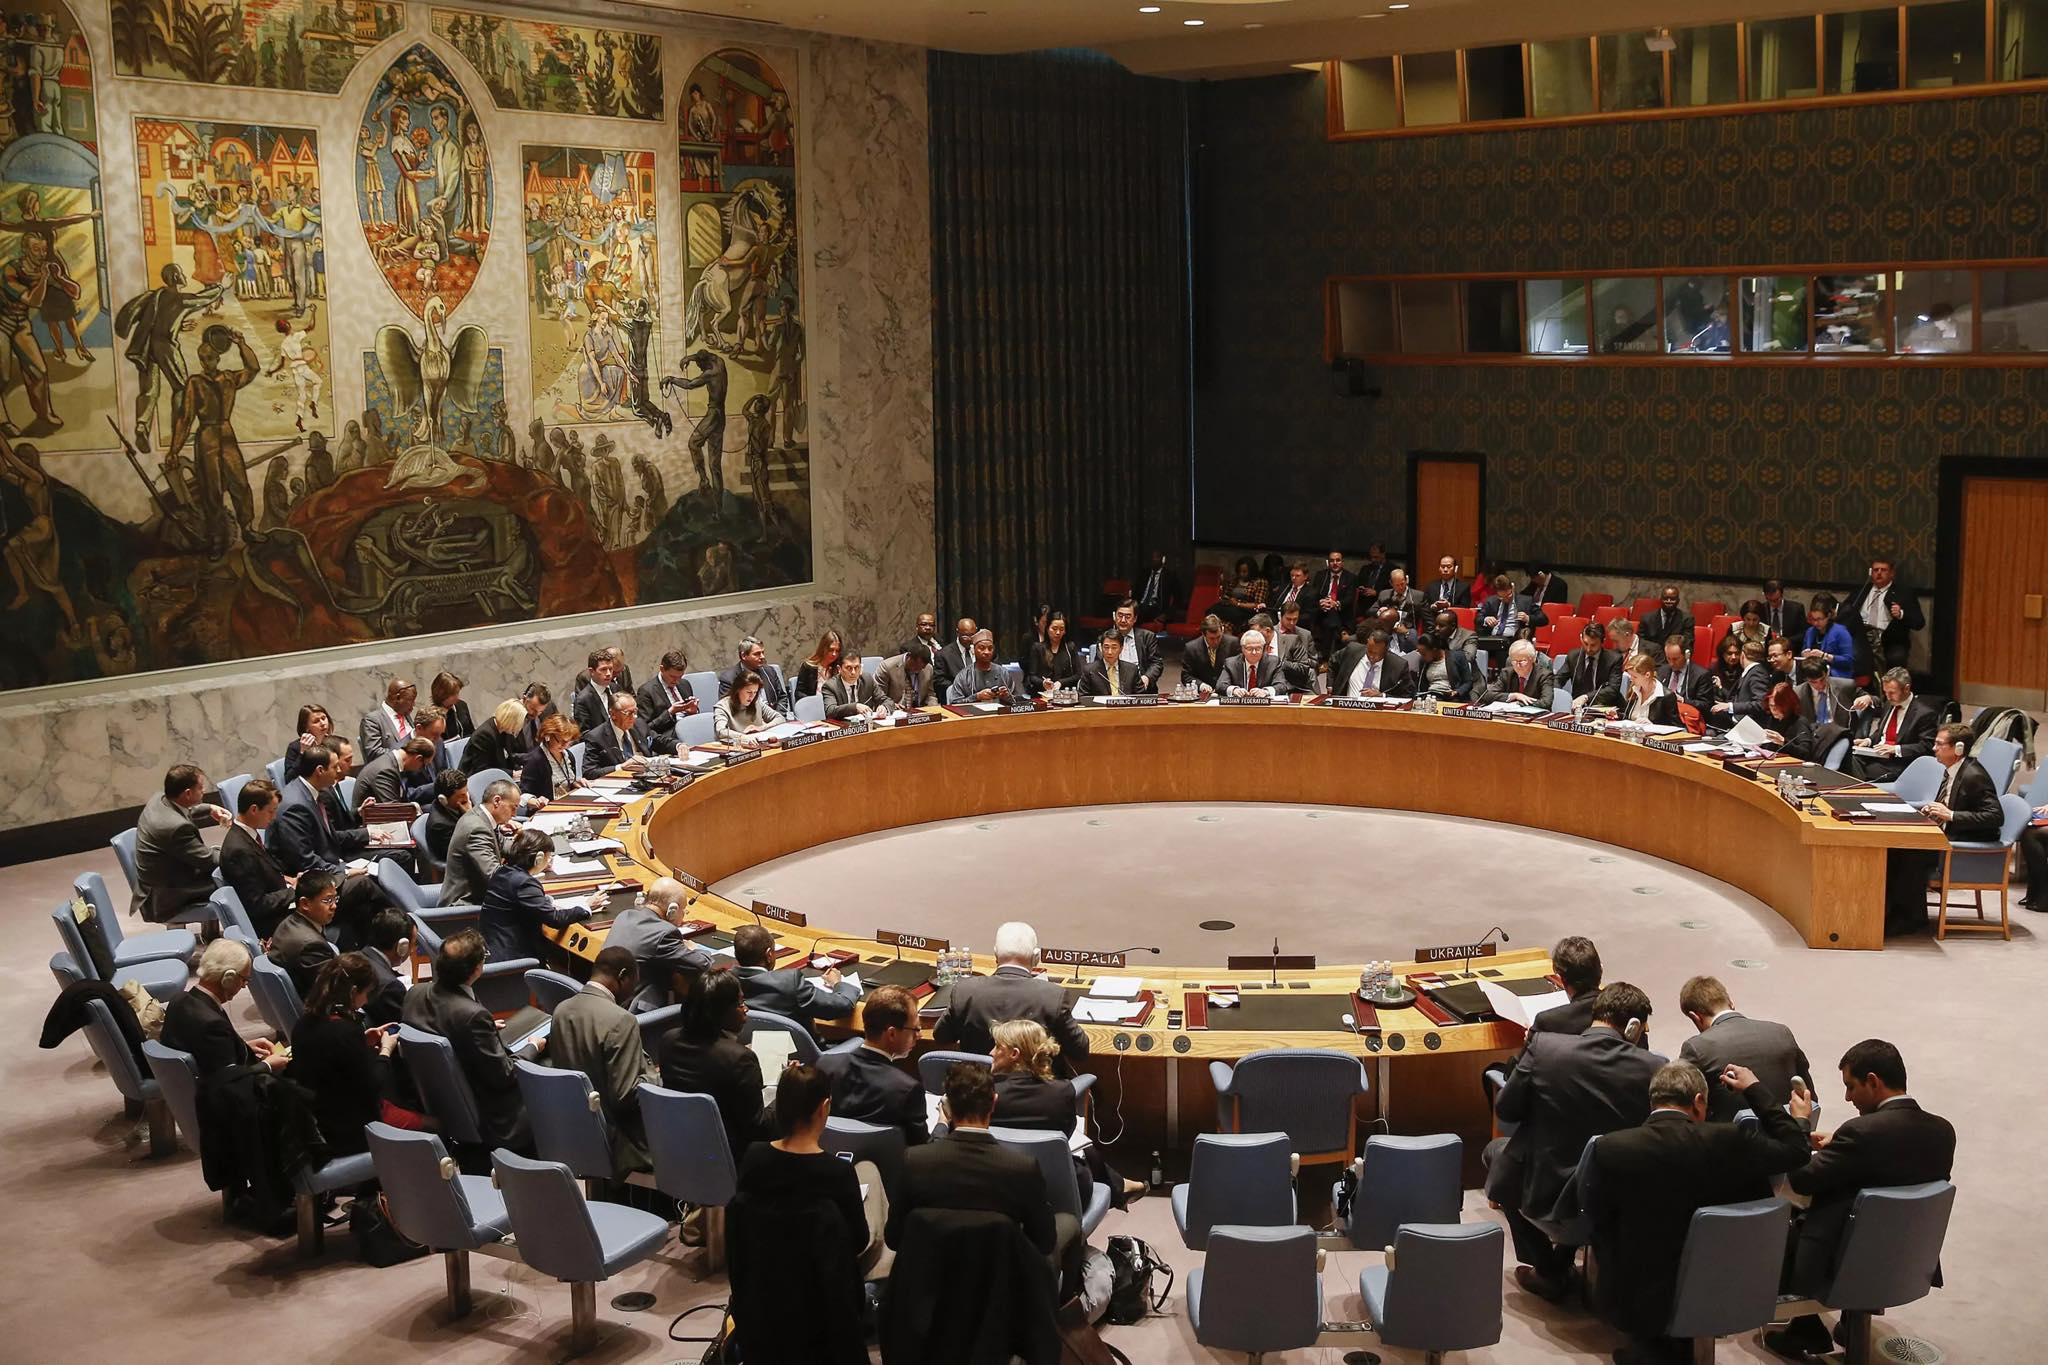 Εντυπωσιακό αποτέλεσμα στο Συμβούλιο Ασφαλείας του ΟΗΕ: Μόνο οι ΗΠΑ στήριξαν το Ισραήλ και απέτρεψαν την καταδίκη του!